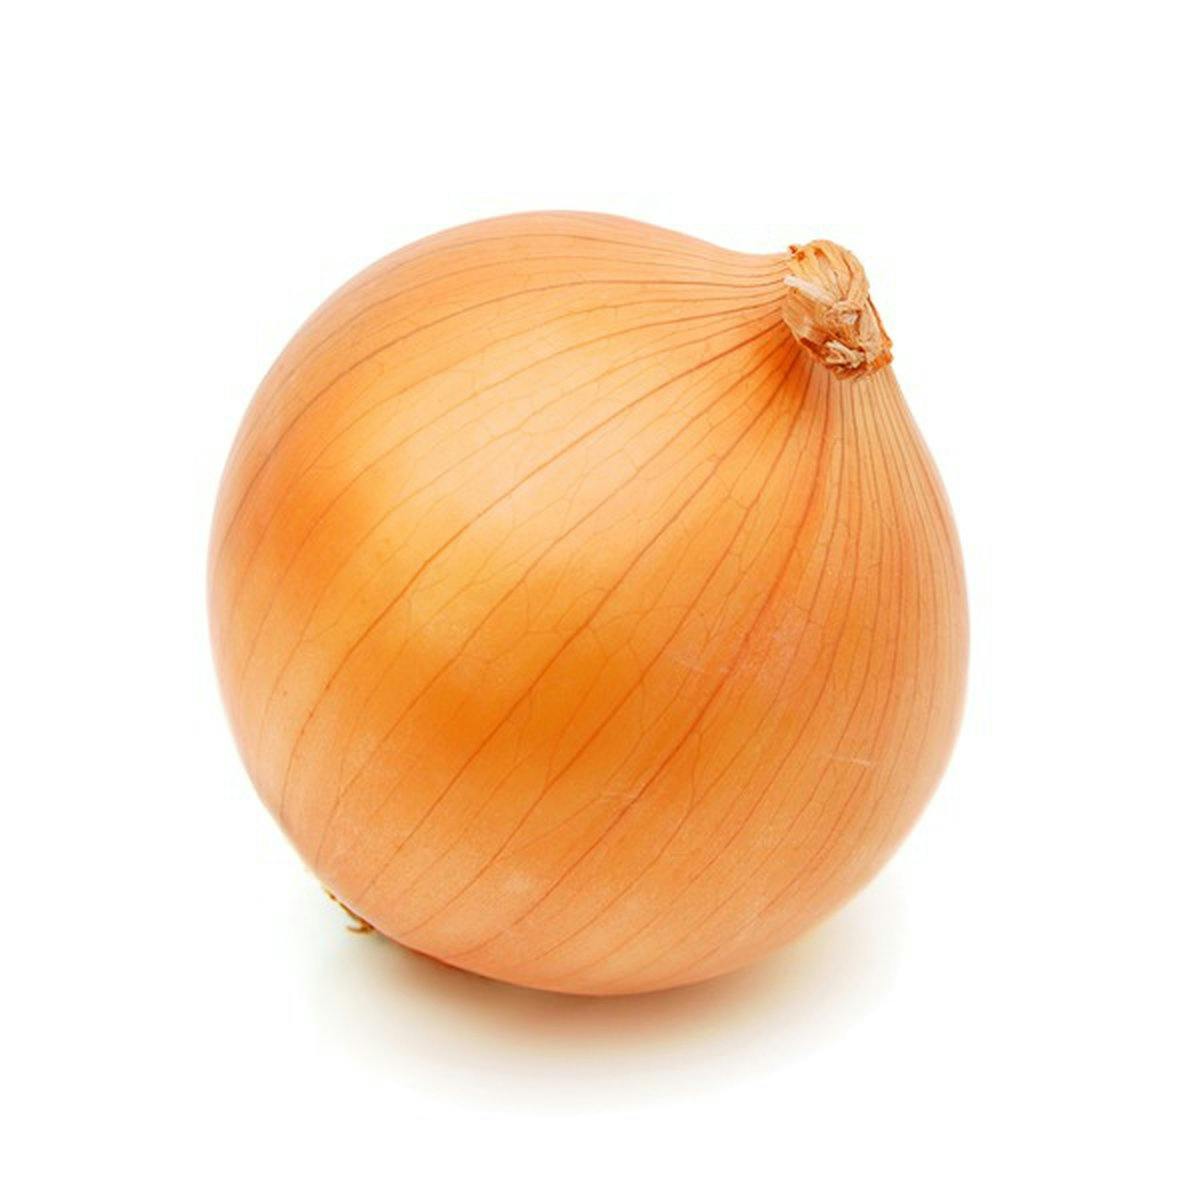 chopped yellow onion